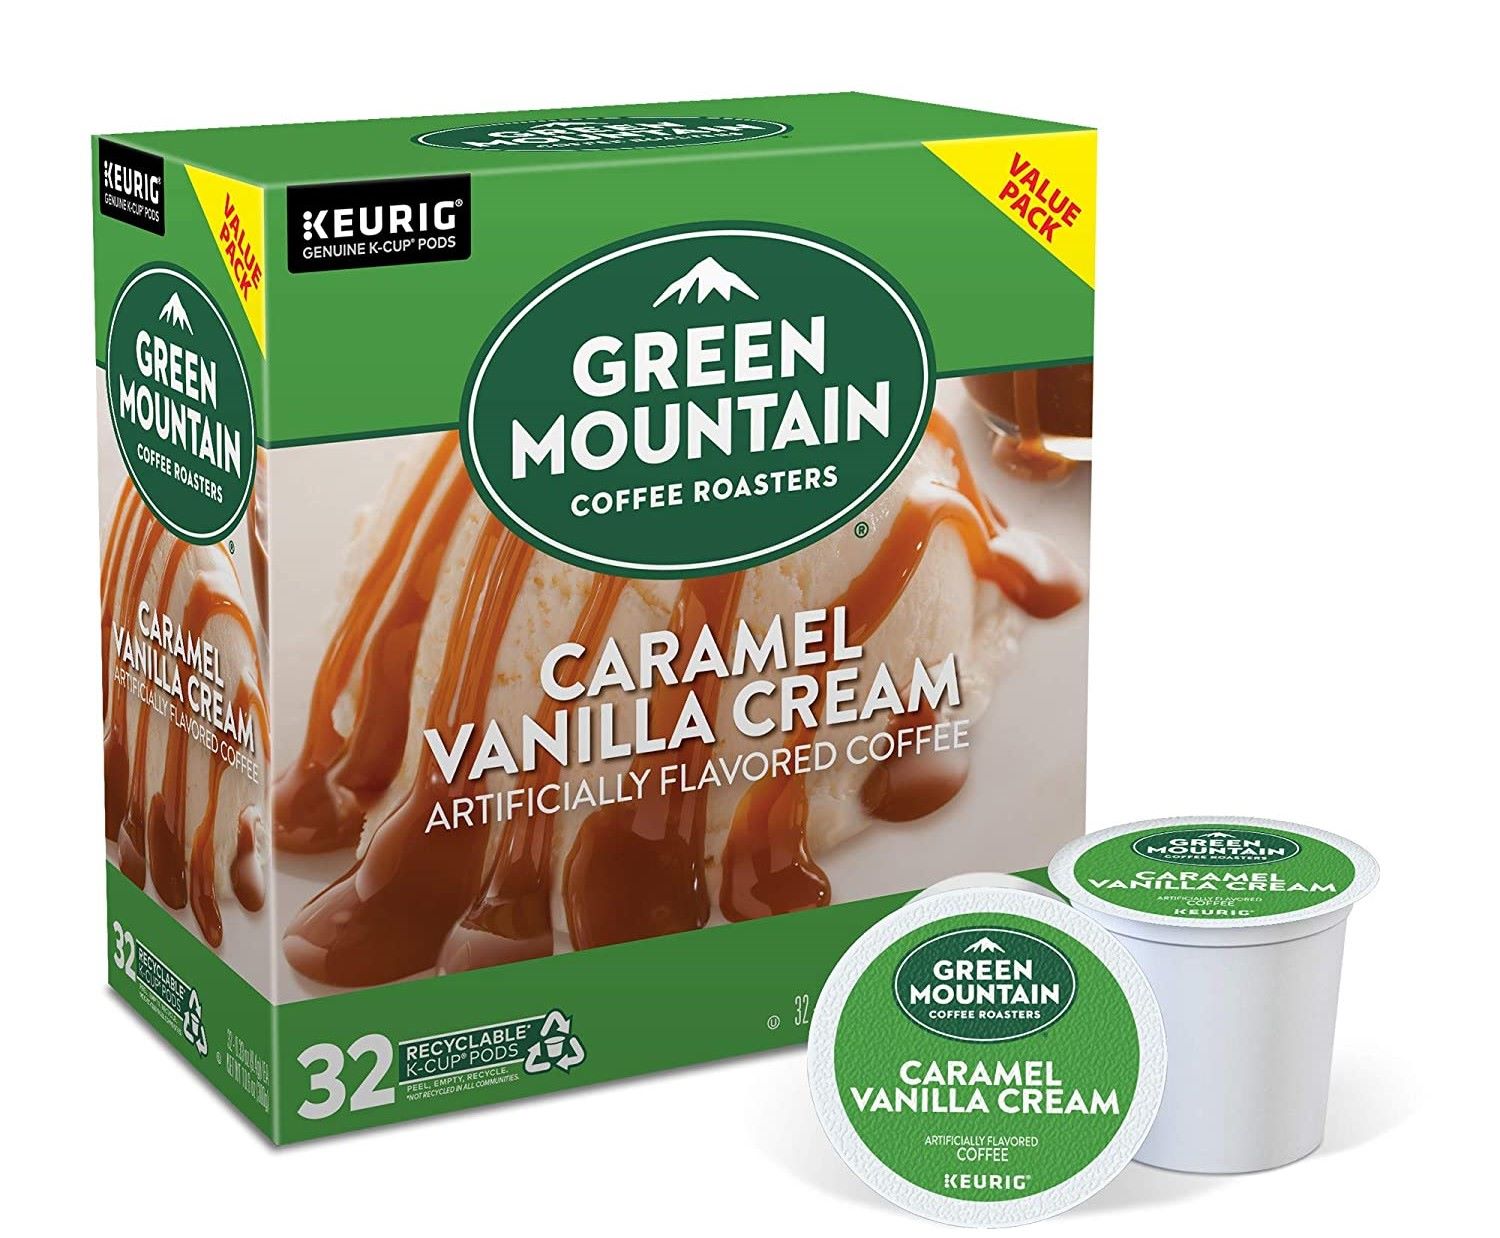 19-green-mountain-caramel-vanilla-cream-nutrition-facts